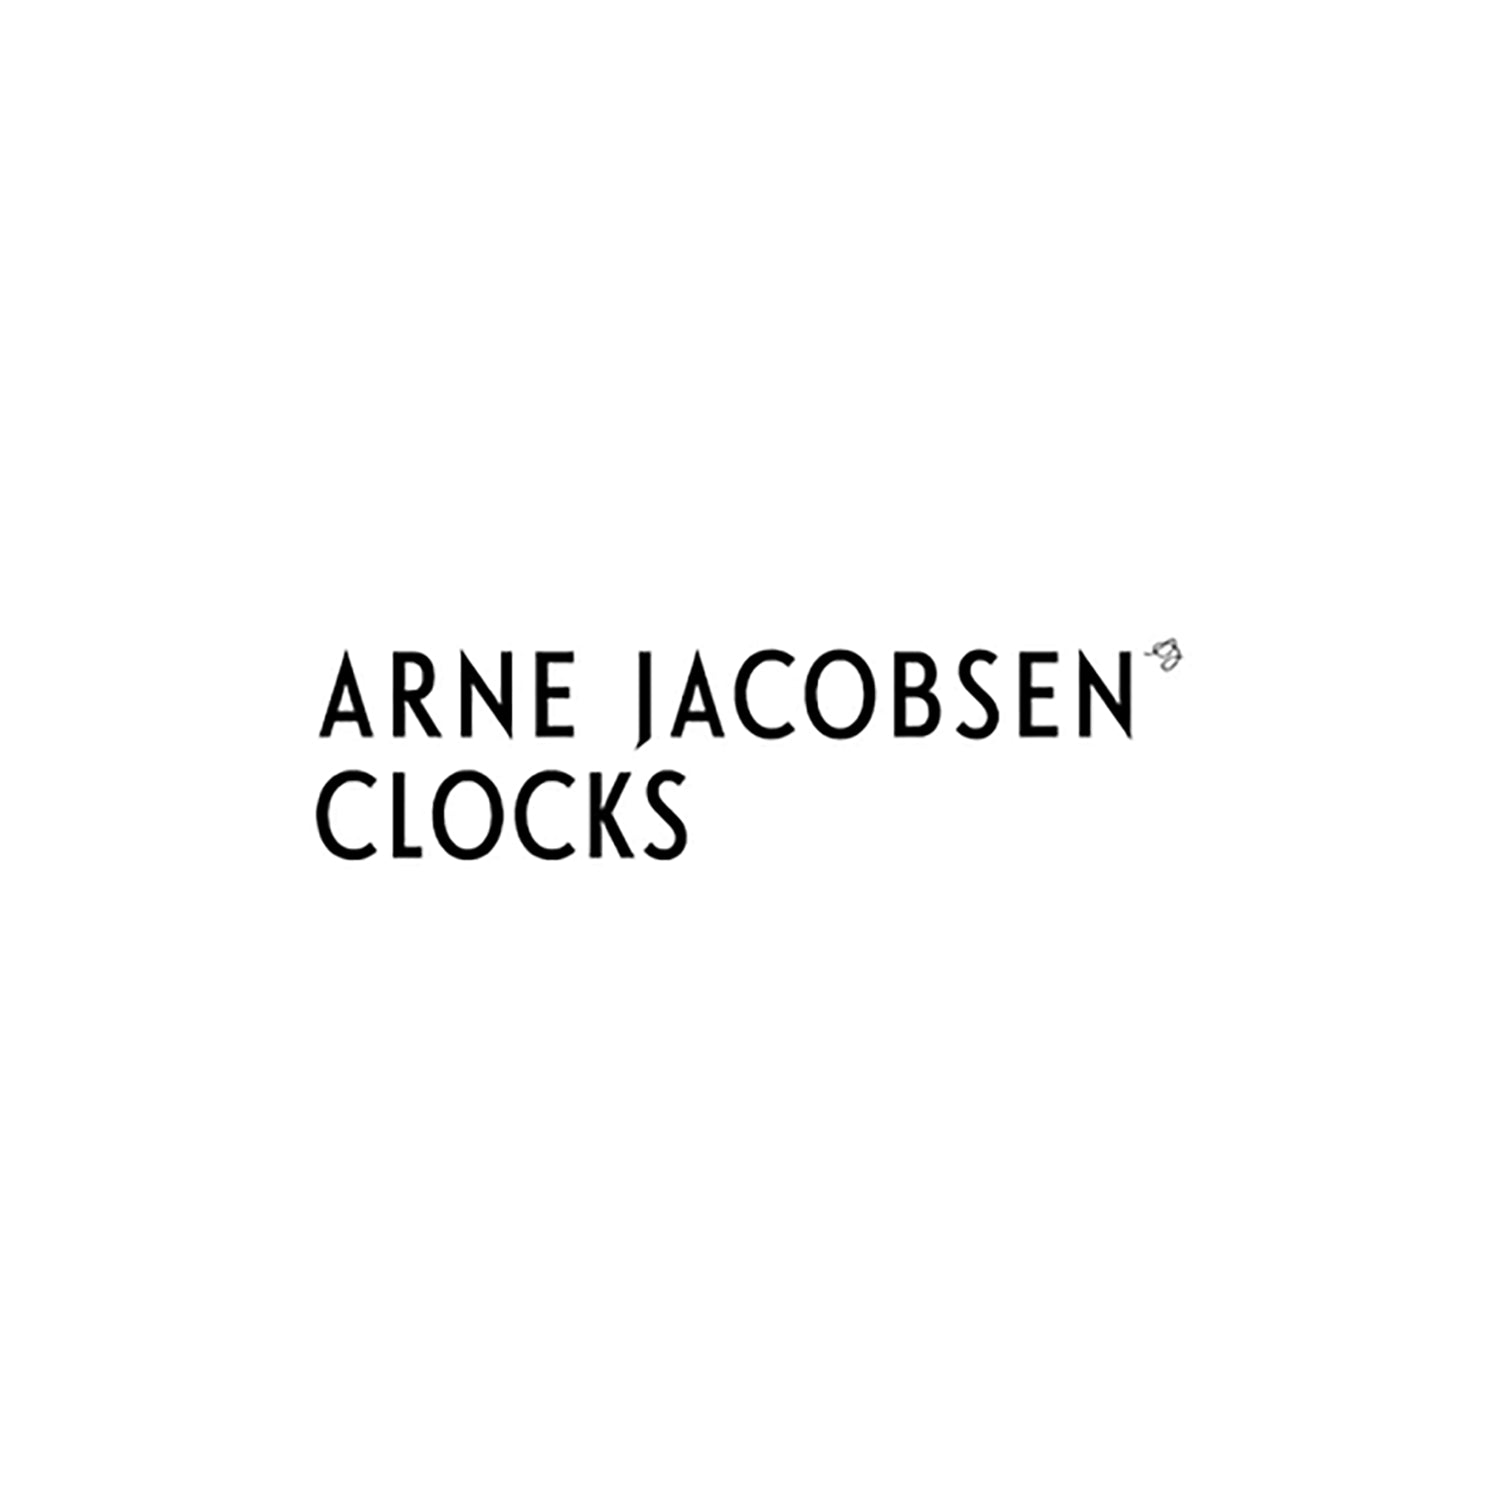 ARNE JACOBSEN CLOCKS